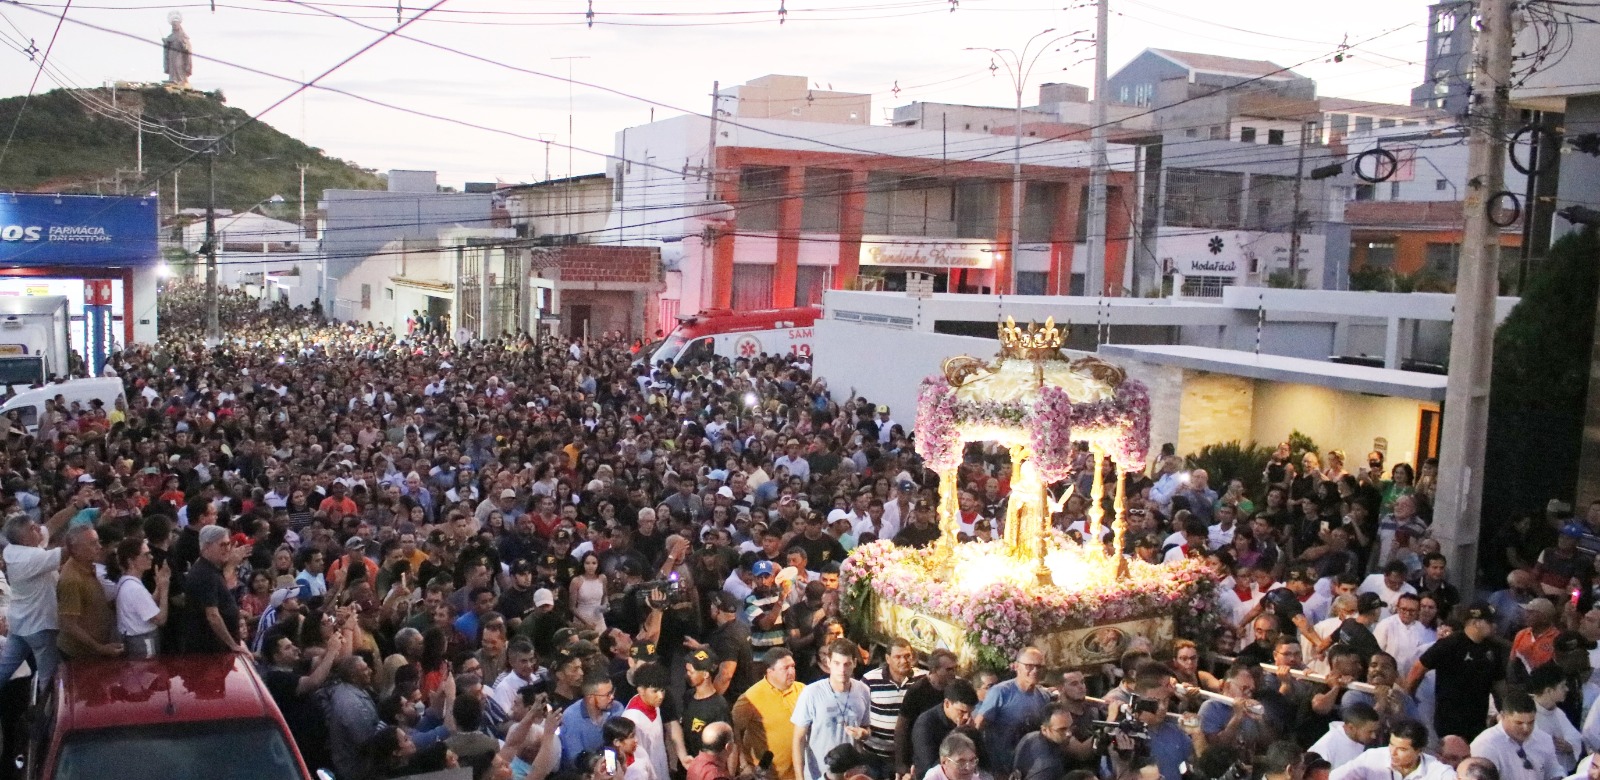 Festa da Fé: procissão de Santa Rita de Cássia leva cerca de 100 mil pessoas às ruas de Santa Cruz